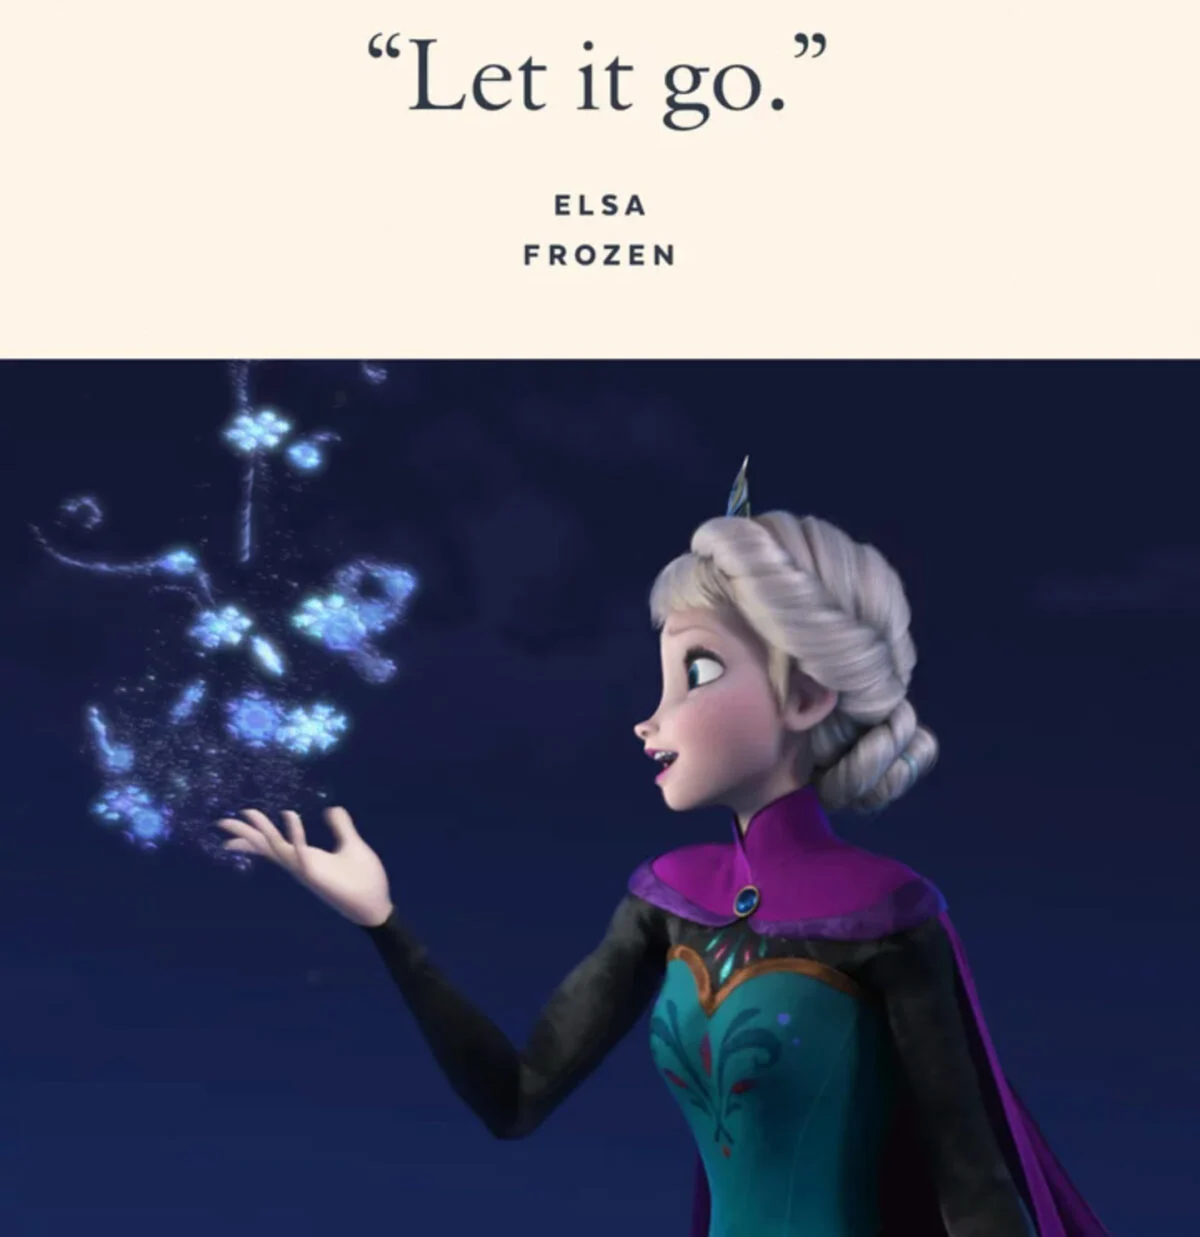 Elsa meme - The Best Disney Memes On The Internet